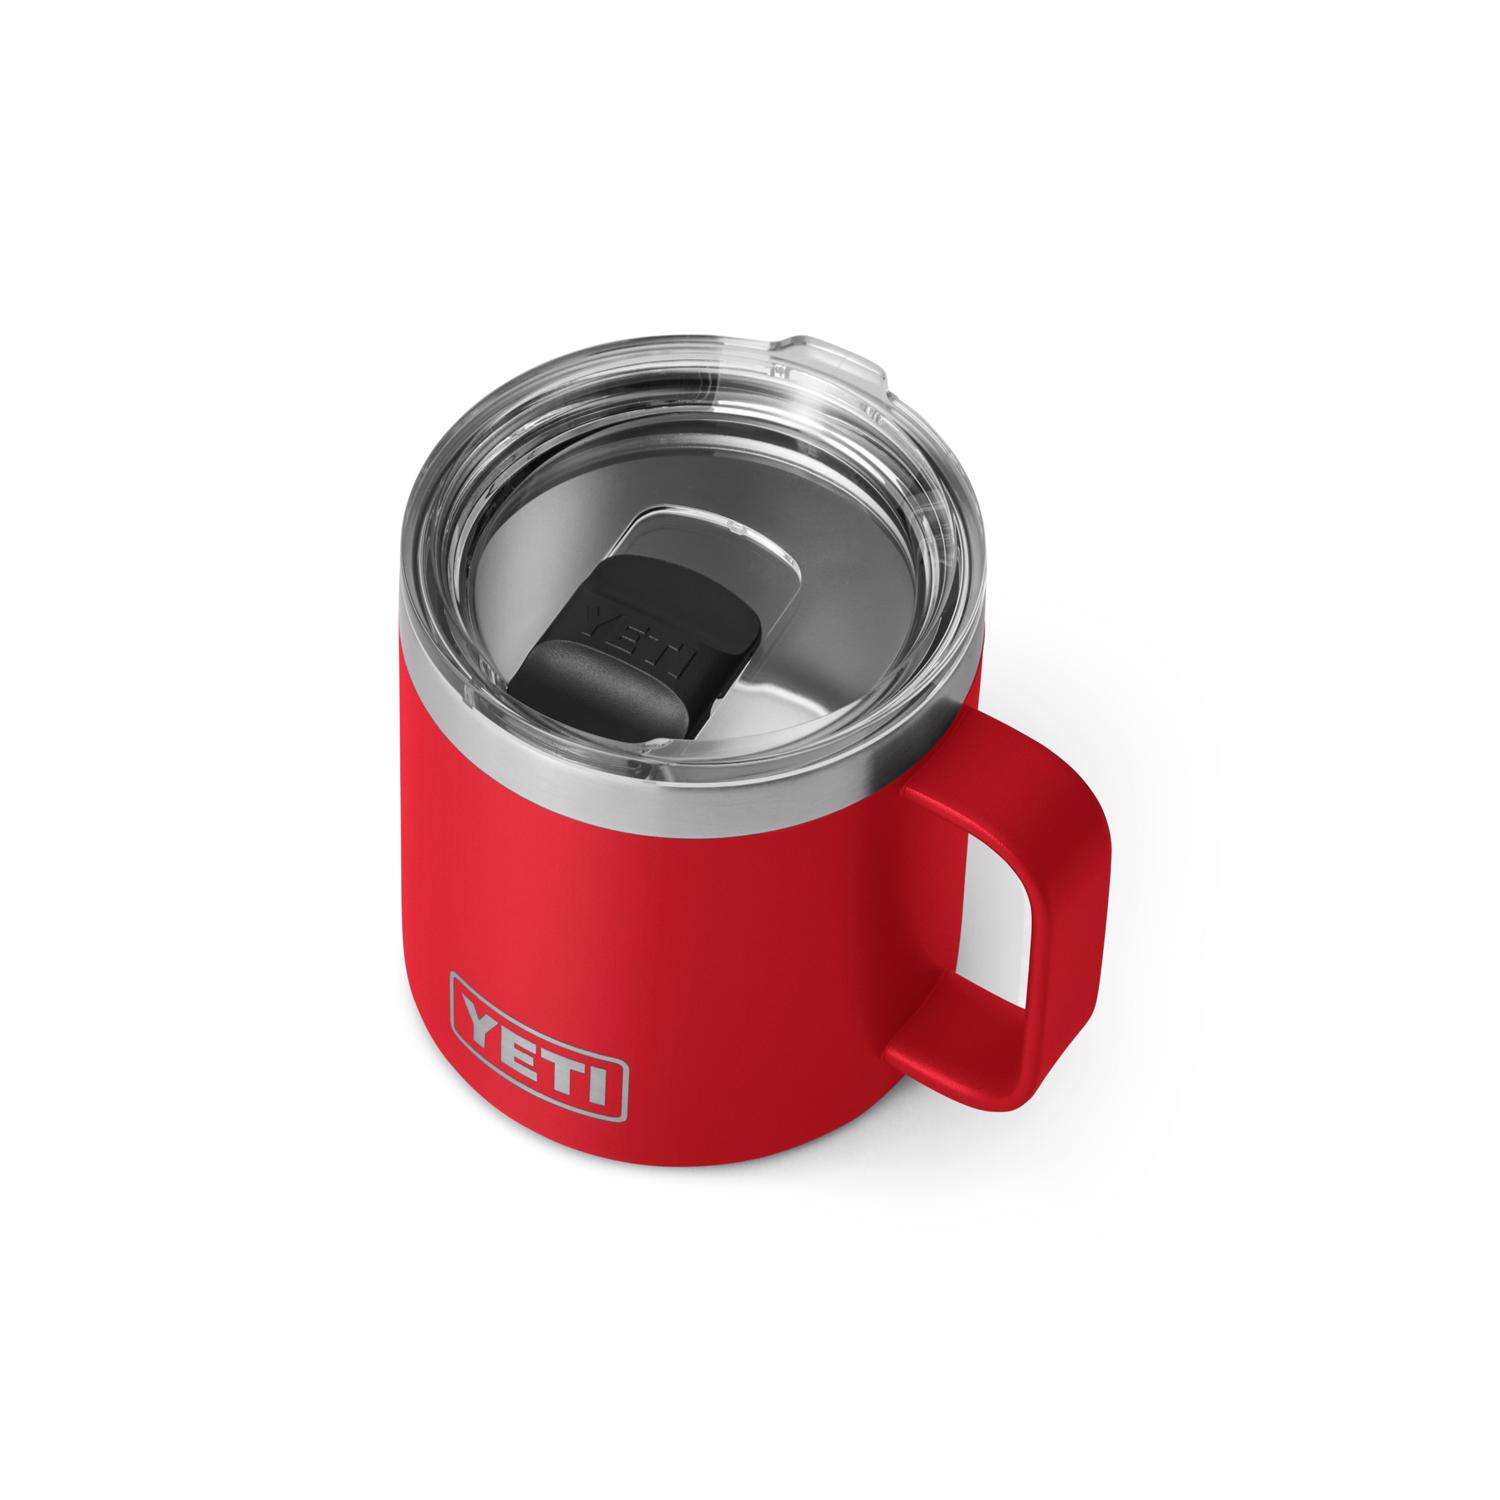 YETI Rambler 14 oz Rescue Red BPA Free Mug with MagSlider Lid